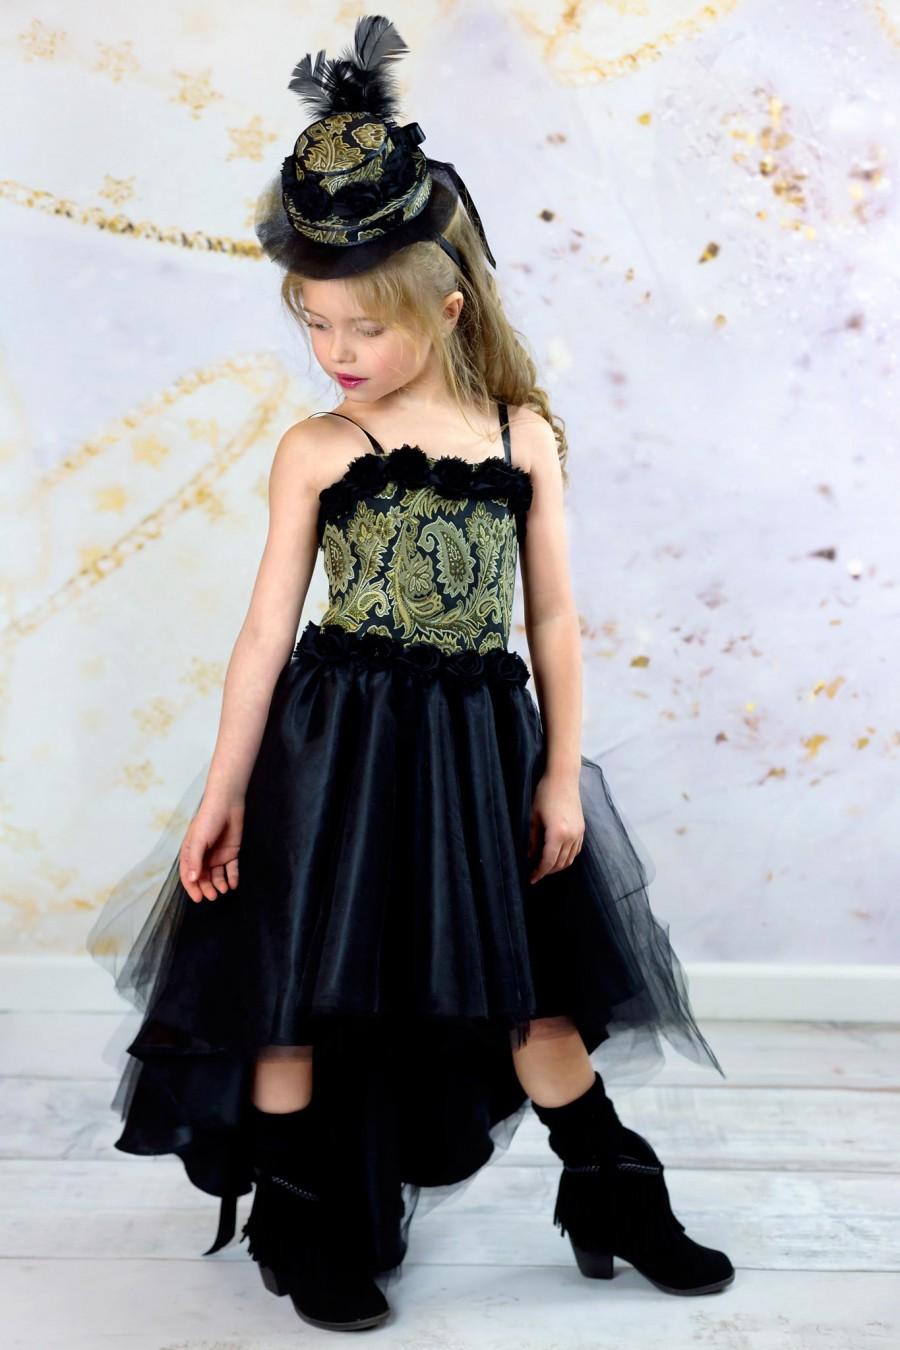 زفاف - Girls Haute Couture Dress - Black and Gold Corset Dress - Pageant Gown - High Low Party Dress - Fascinator Hat - Flower Girl Dress 3t to 10